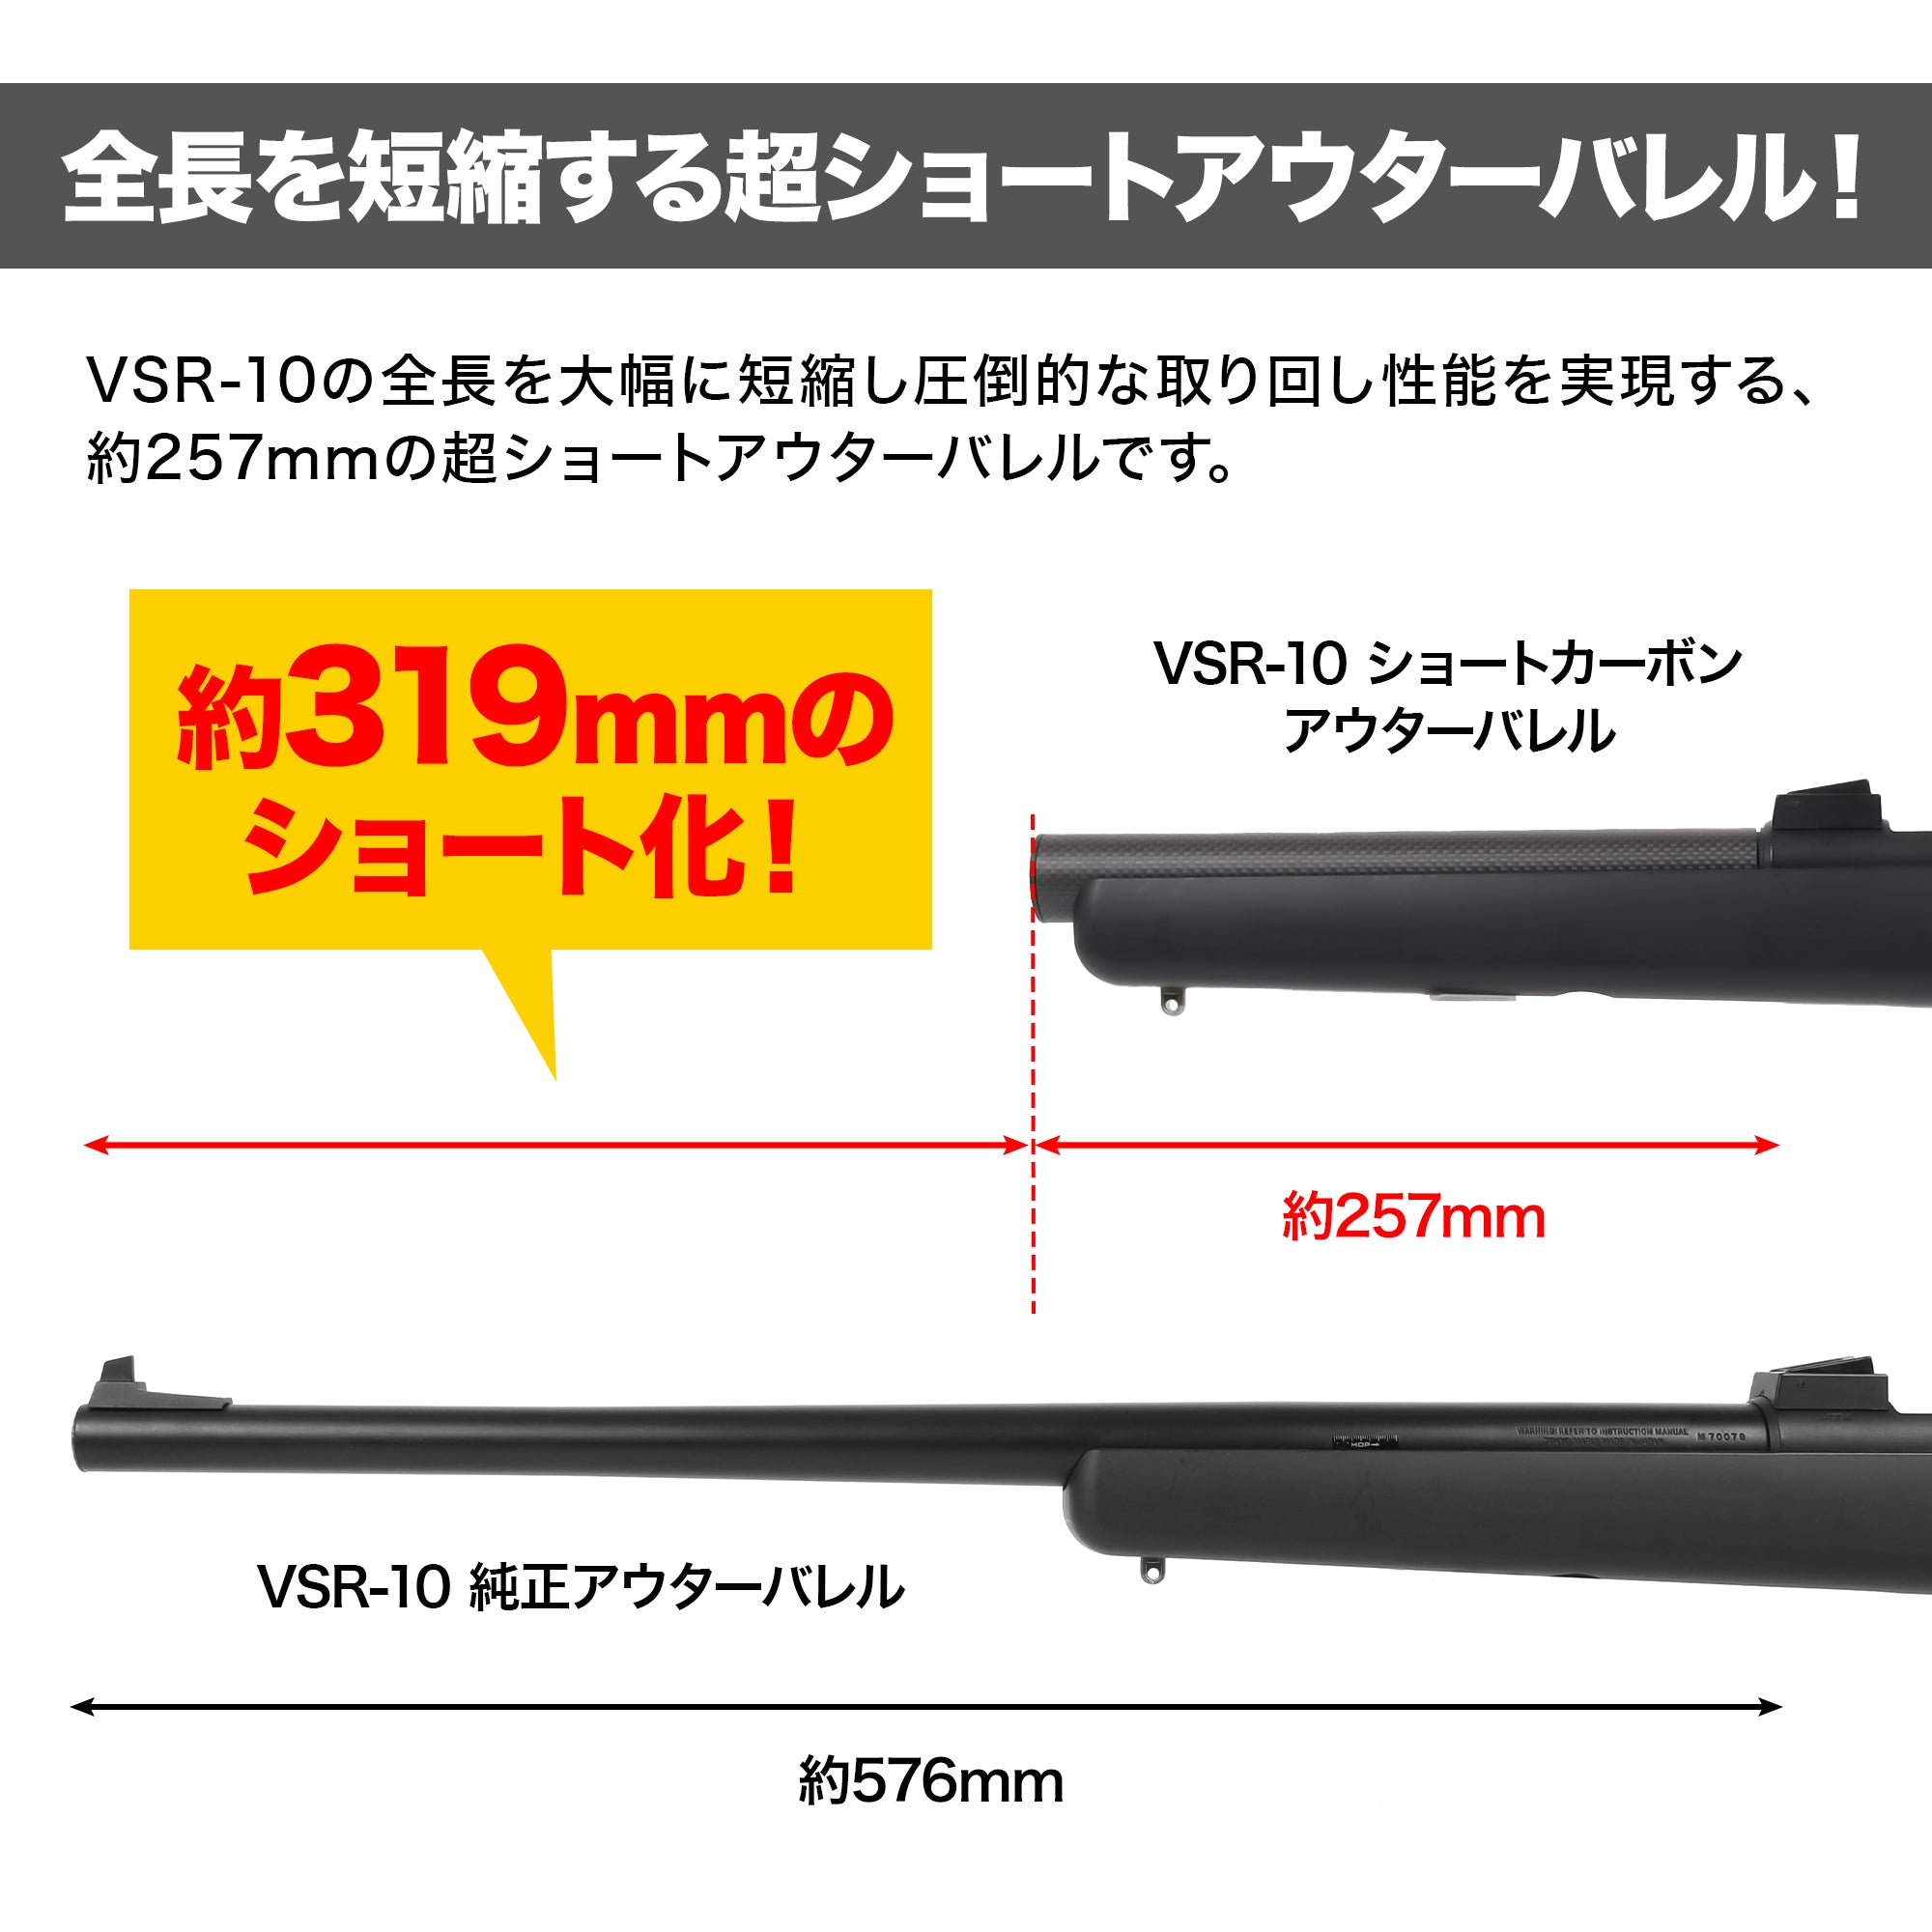 VSR-10 short carbon outer barrel [PSS].